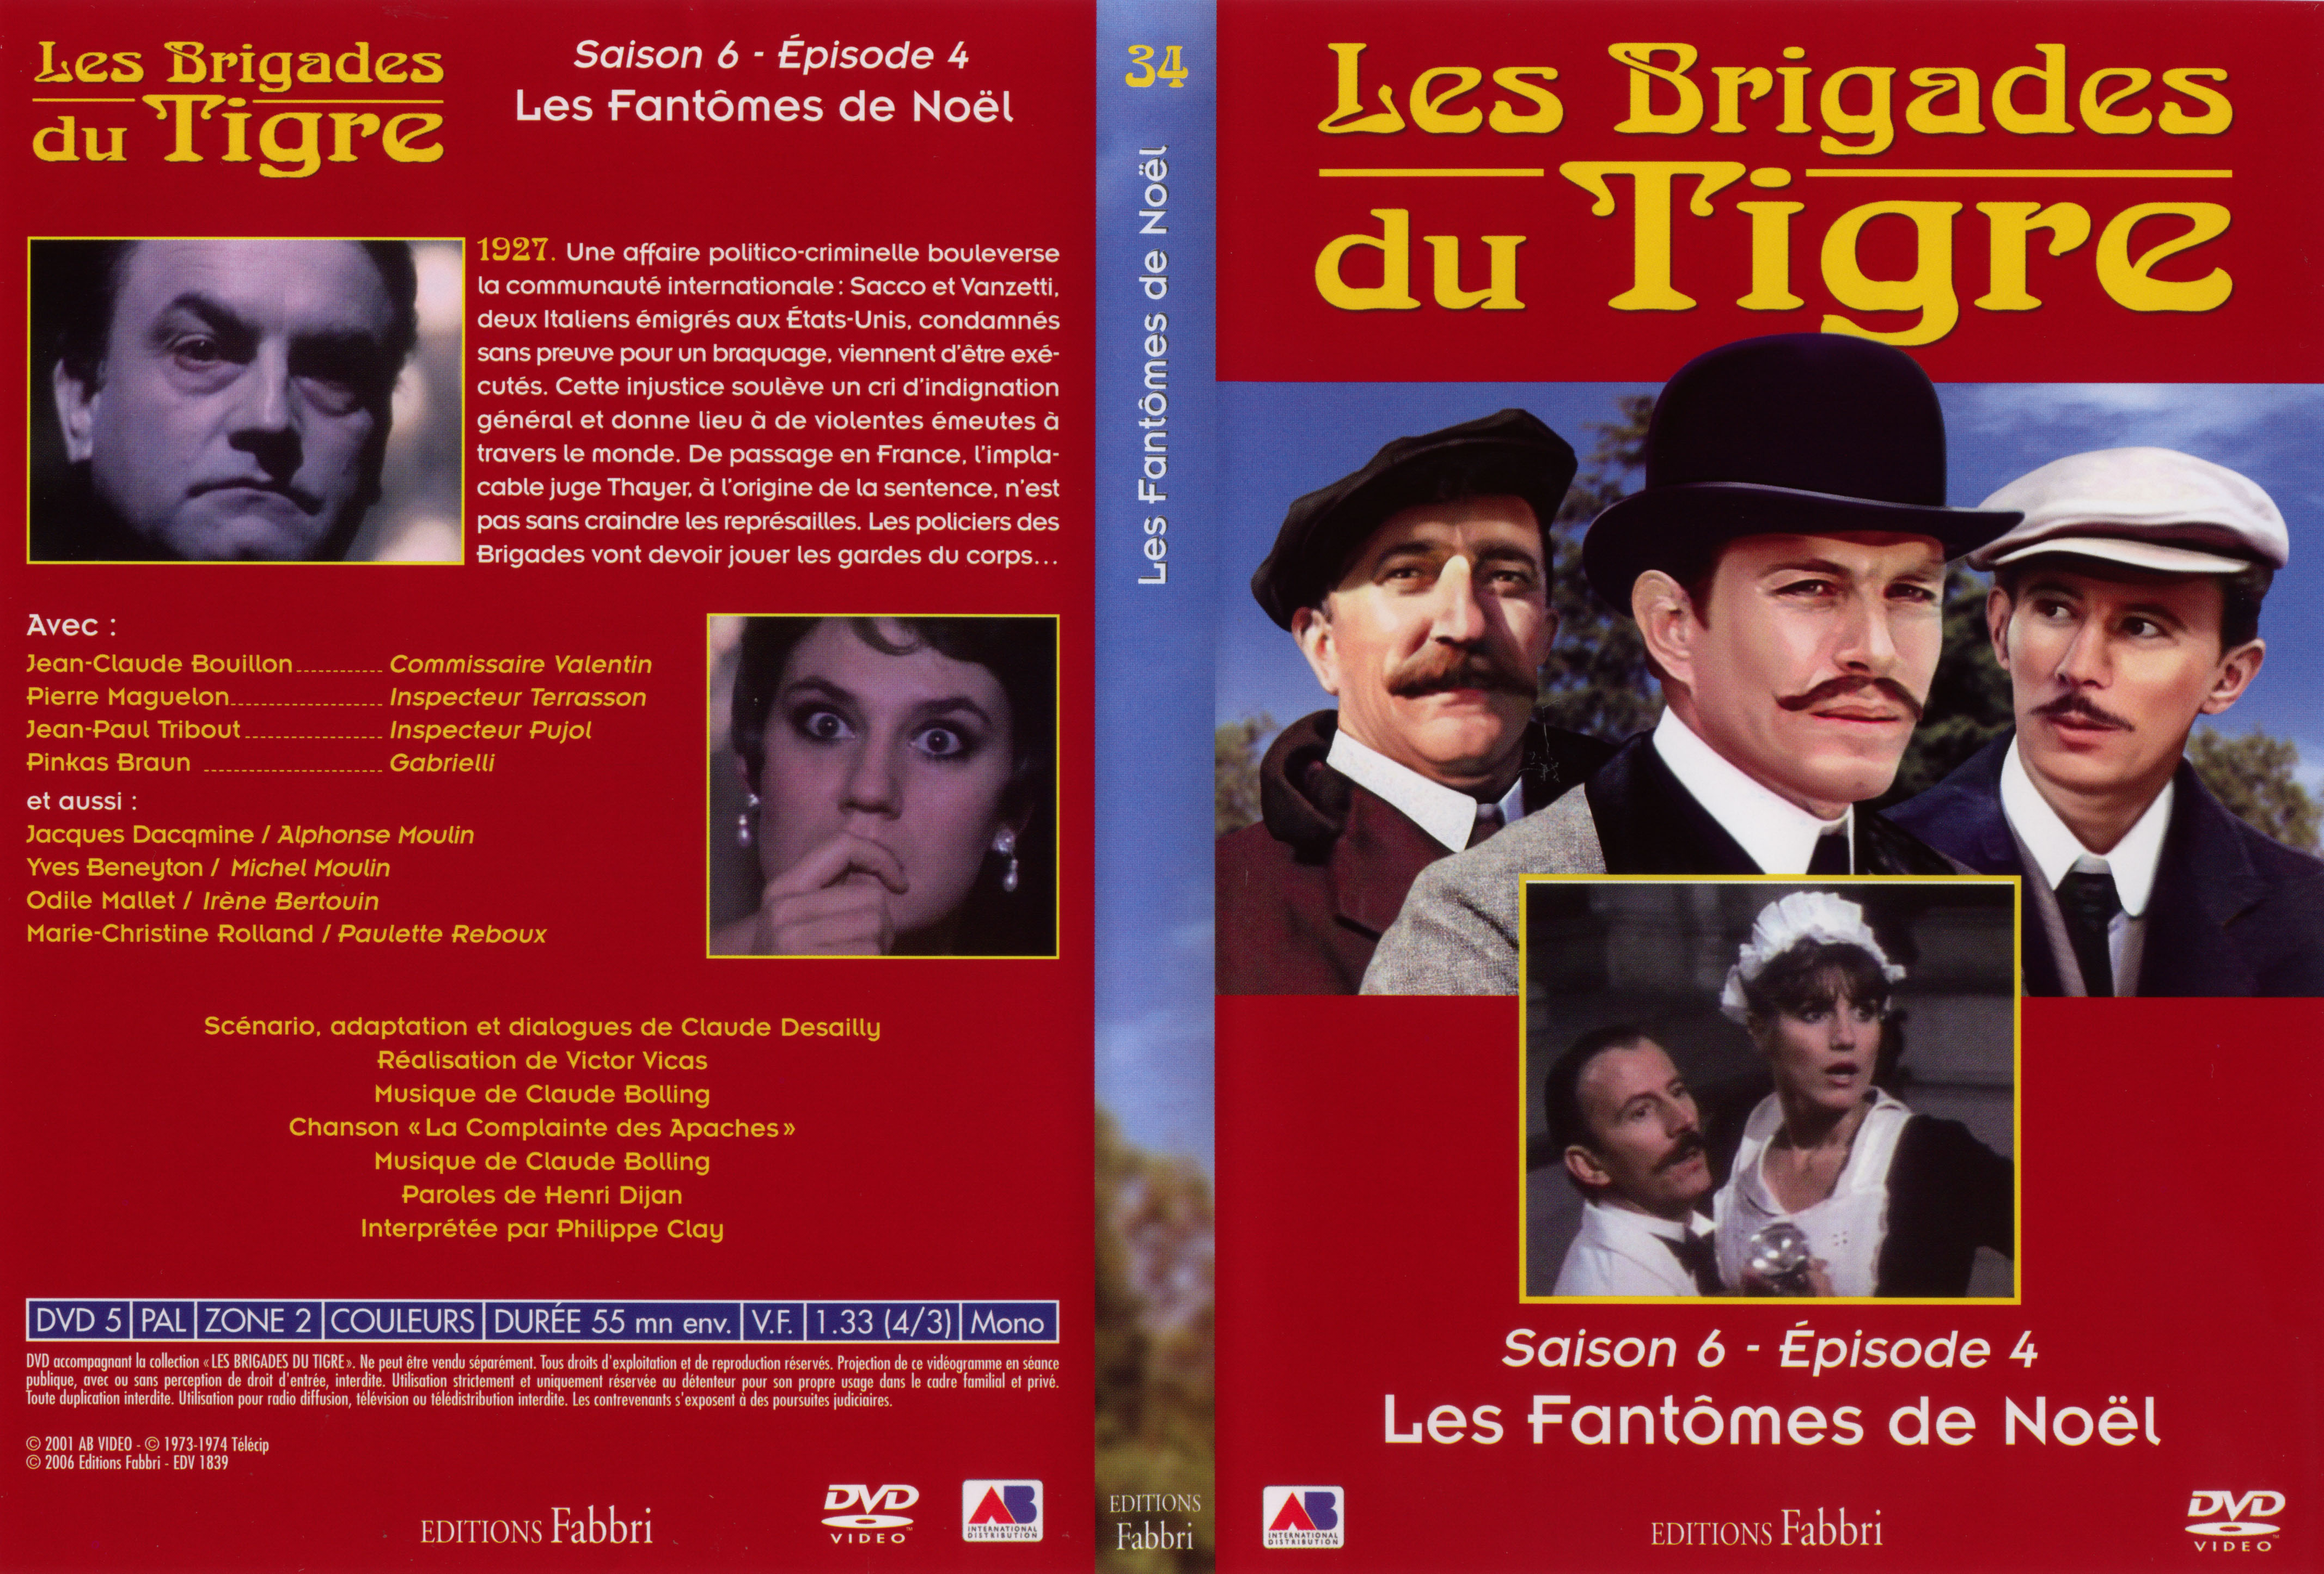 Jaquette DVD Les brigades du tigre saison 6 pisode 4